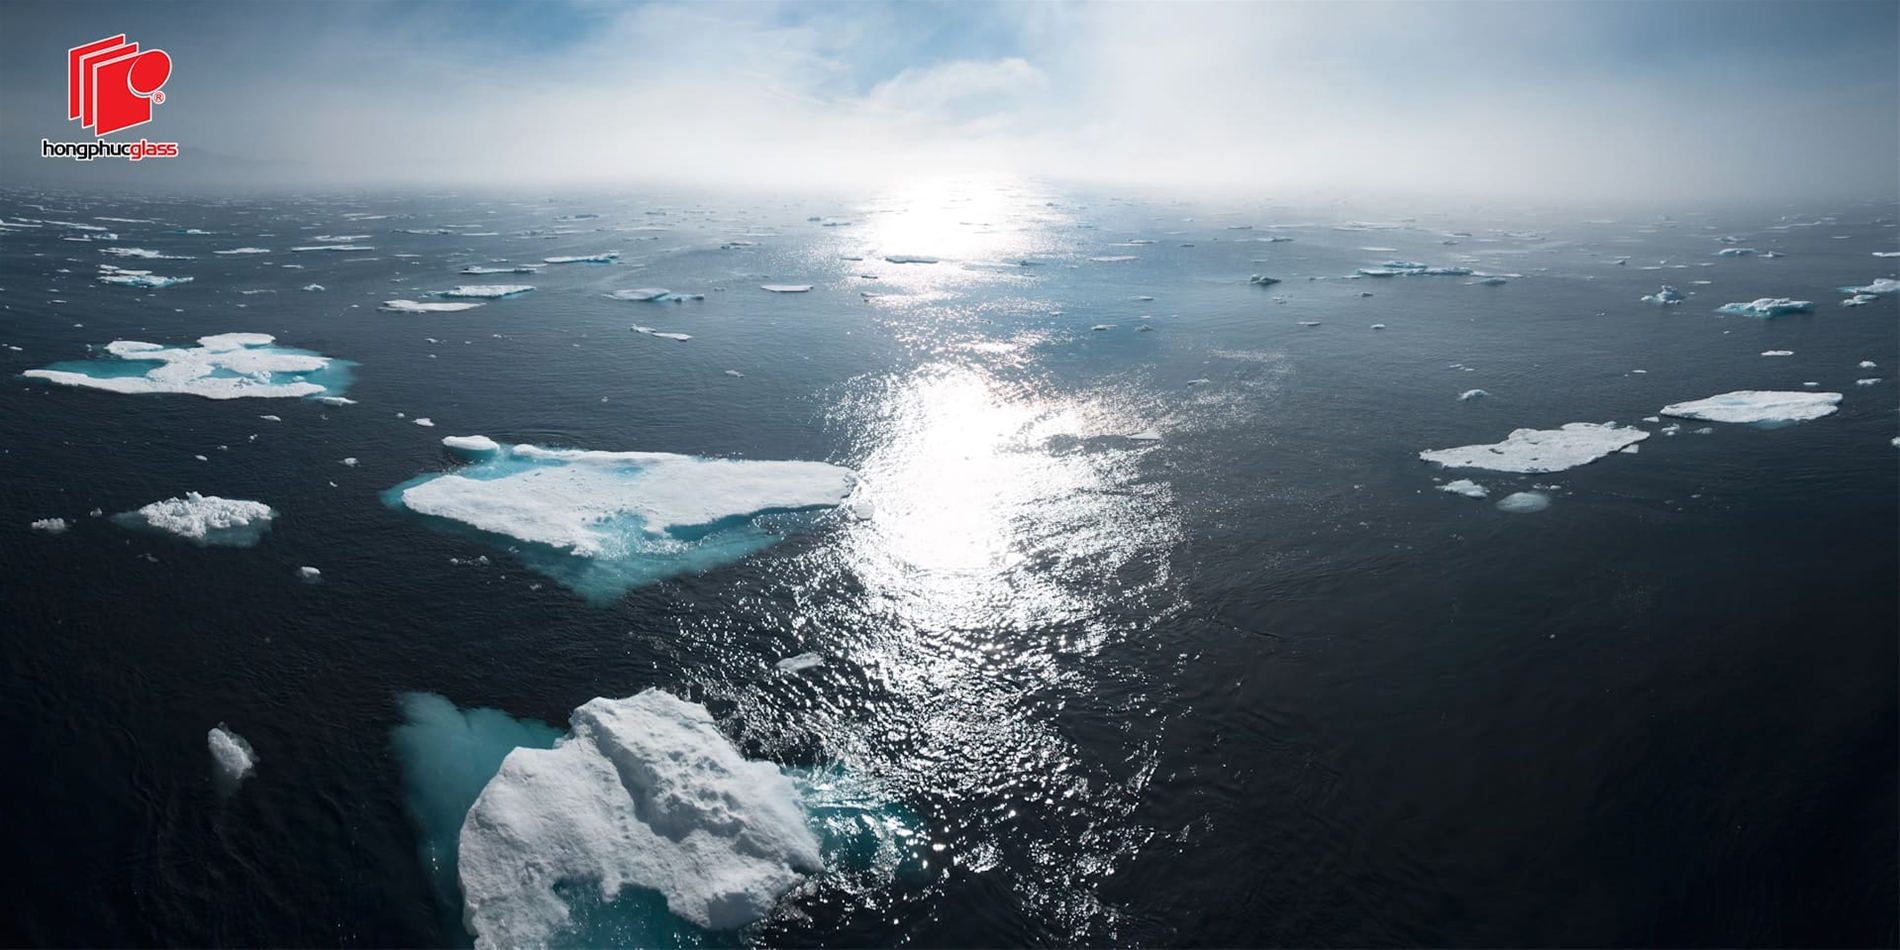 Biến đổi khí hậu làm băng tan, nước biển dâng